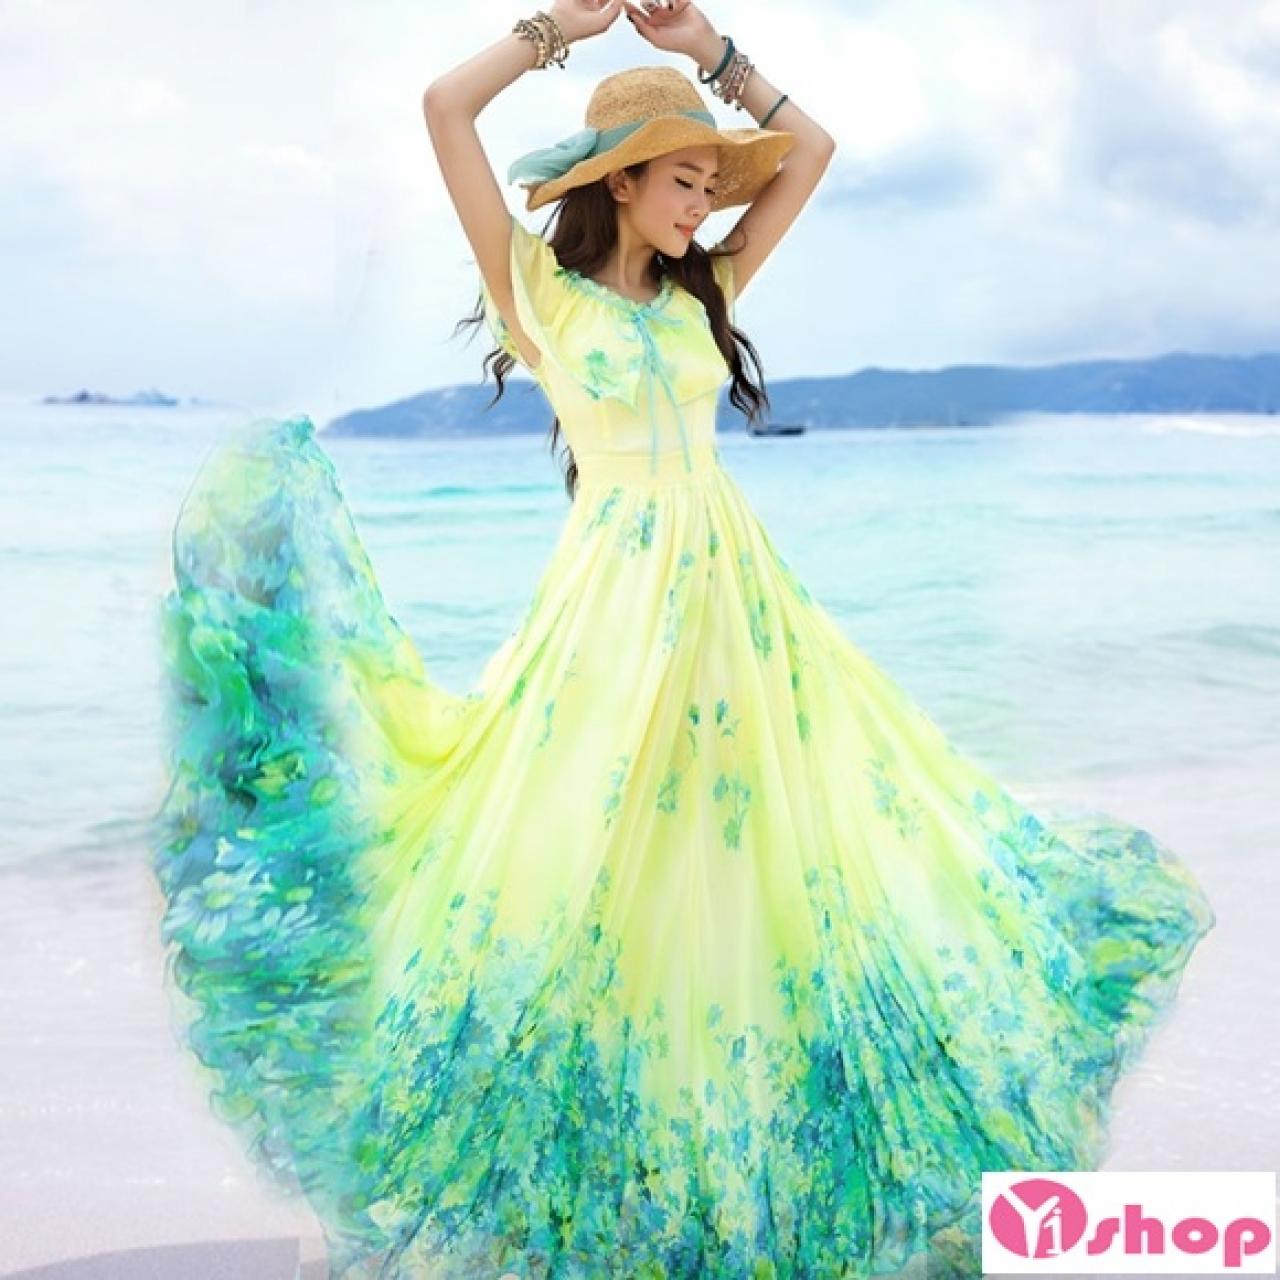 Váy đầm maxi đi biển đẹp xu hướng thời trang hot nhất hè 2021 - 2022